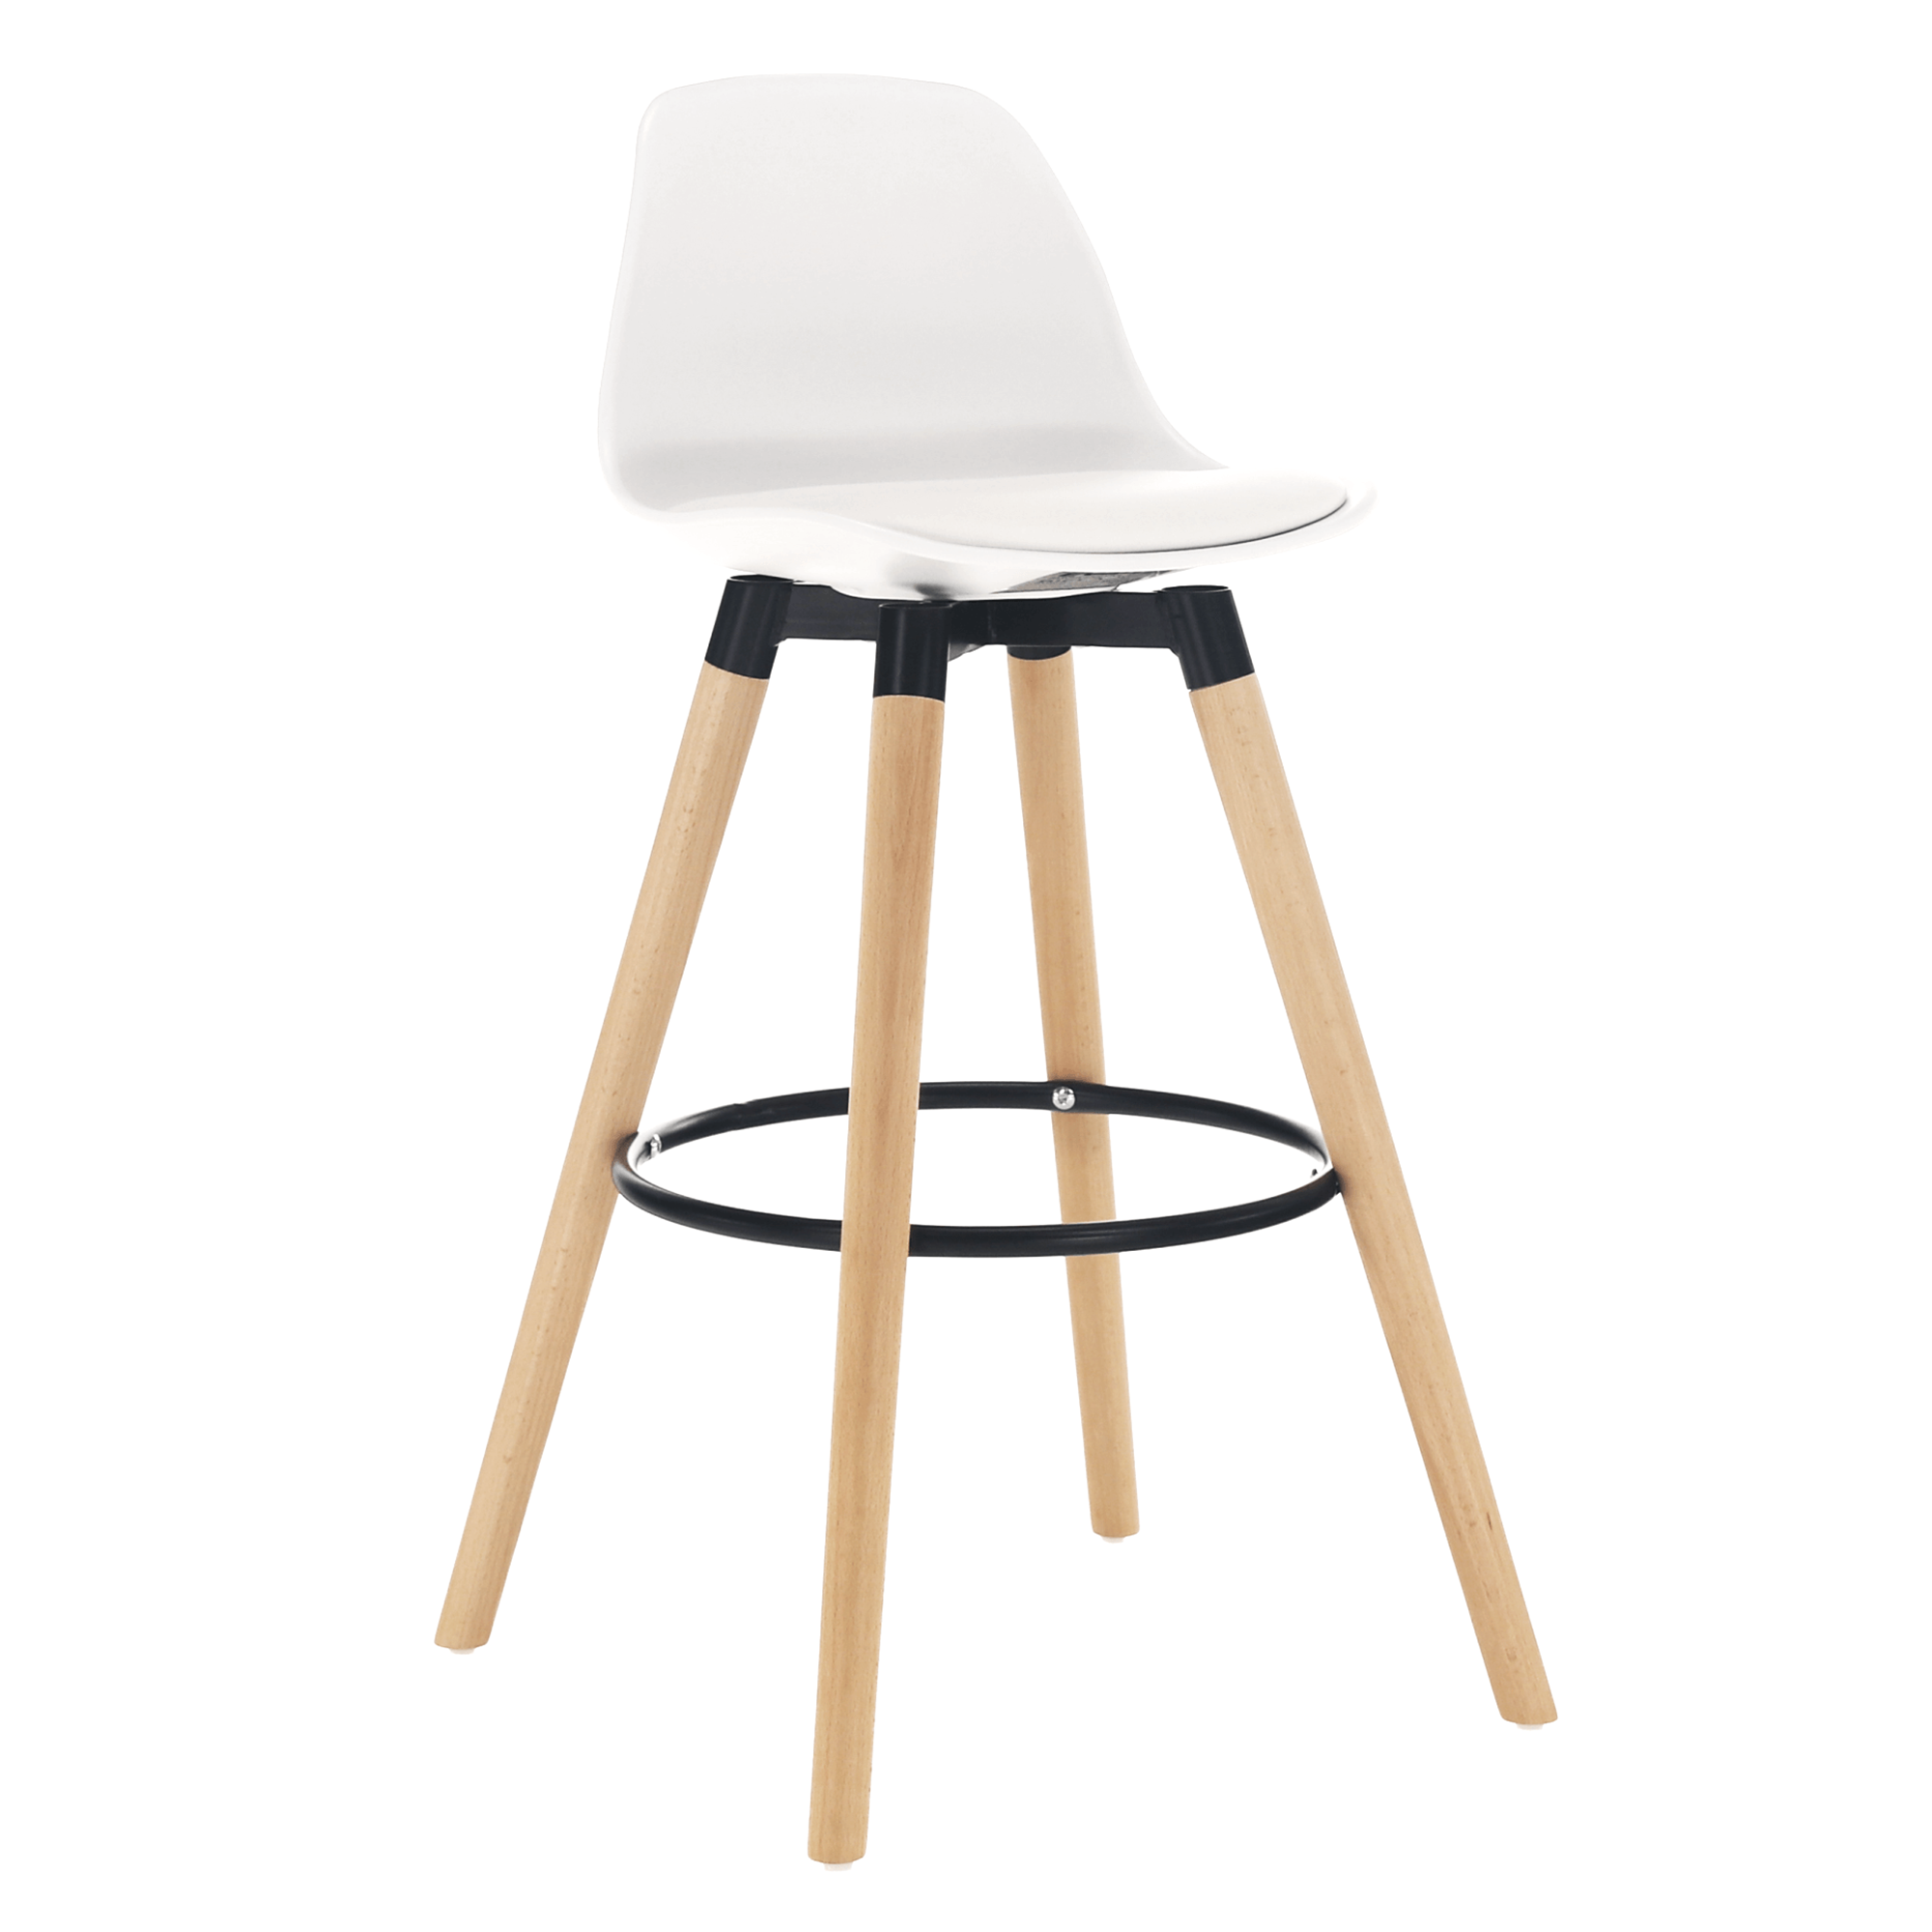 Barová židle, bílá / buk, EVANS | Nábytek a dekorace > Jídelna > Barové židle a stoličky > Barové židle